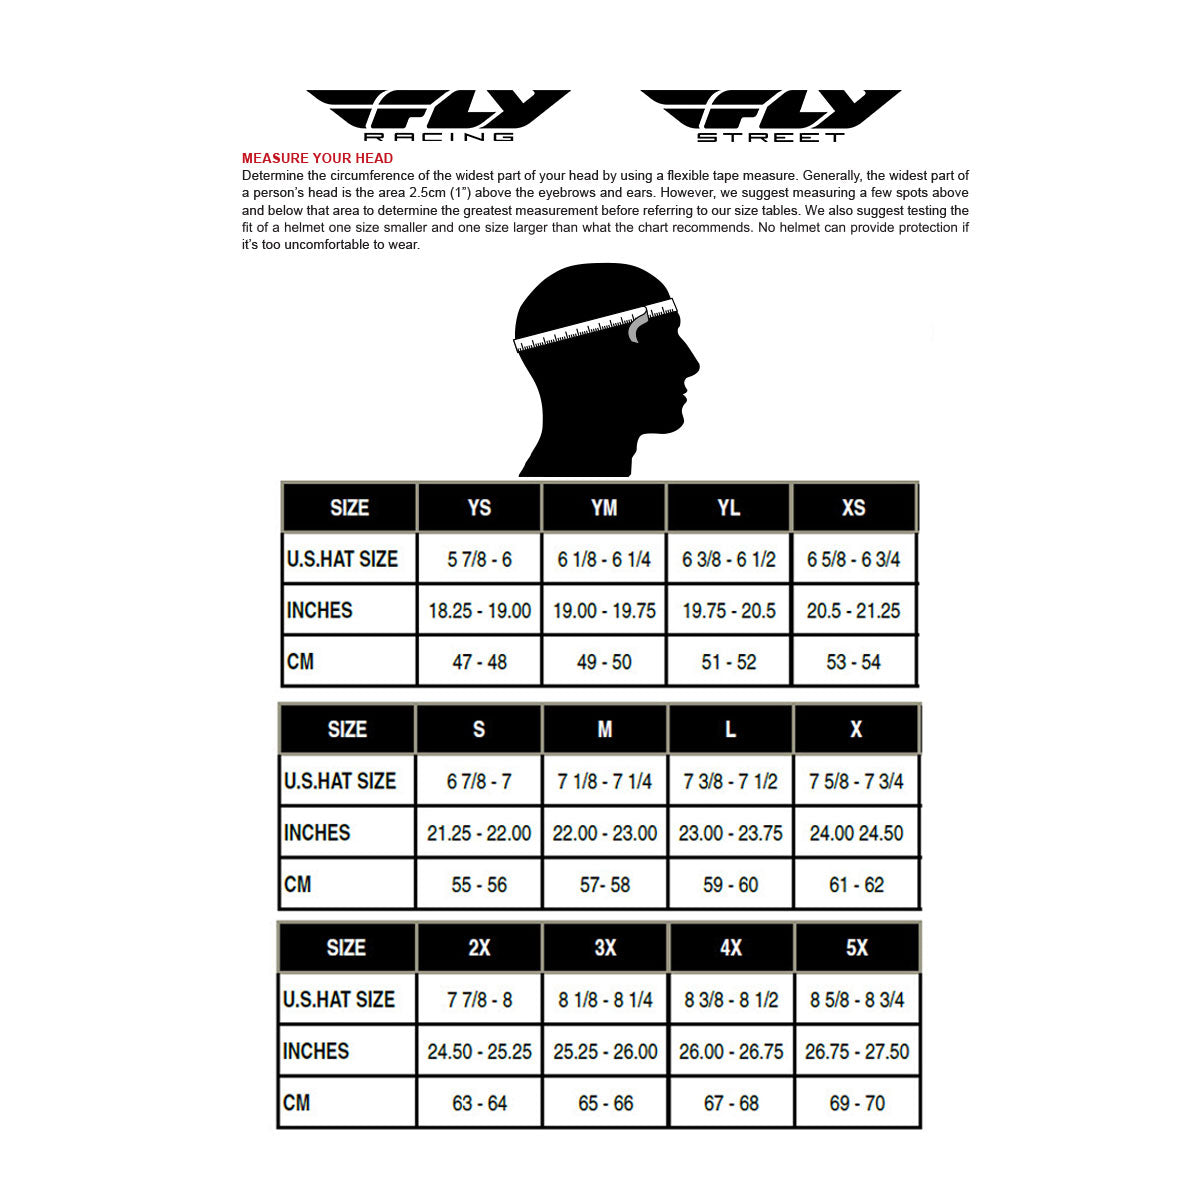 Fly Racing 73-7026 Trekker Pulse Helmet Matte Grey/Black Camo